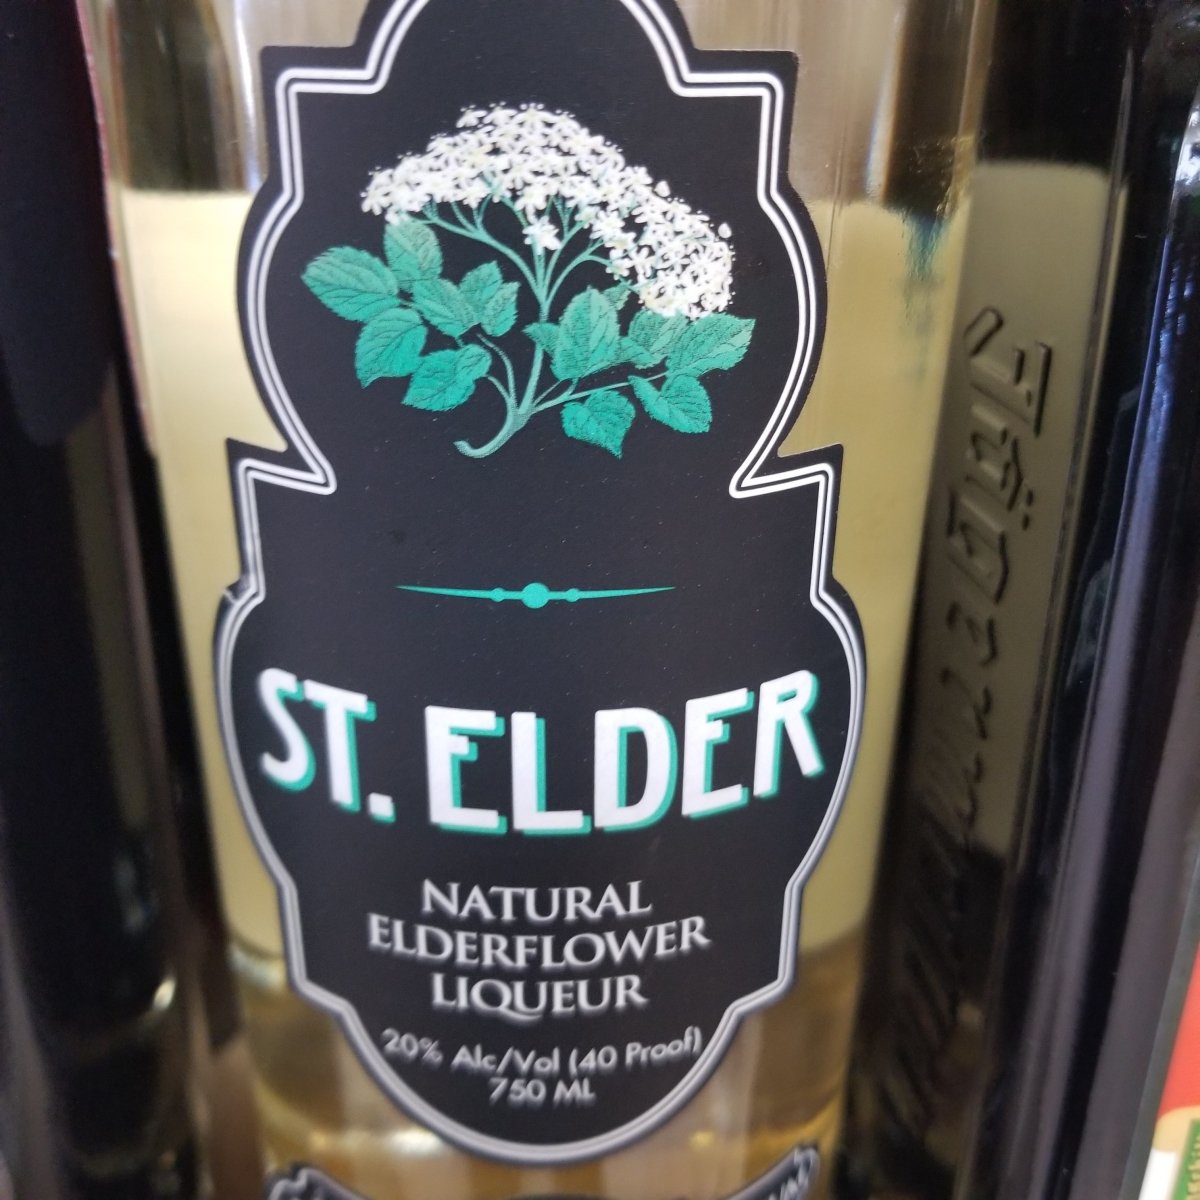 Saint Germain Elderflower 750ml – Wainscott Main Wine & Spirits